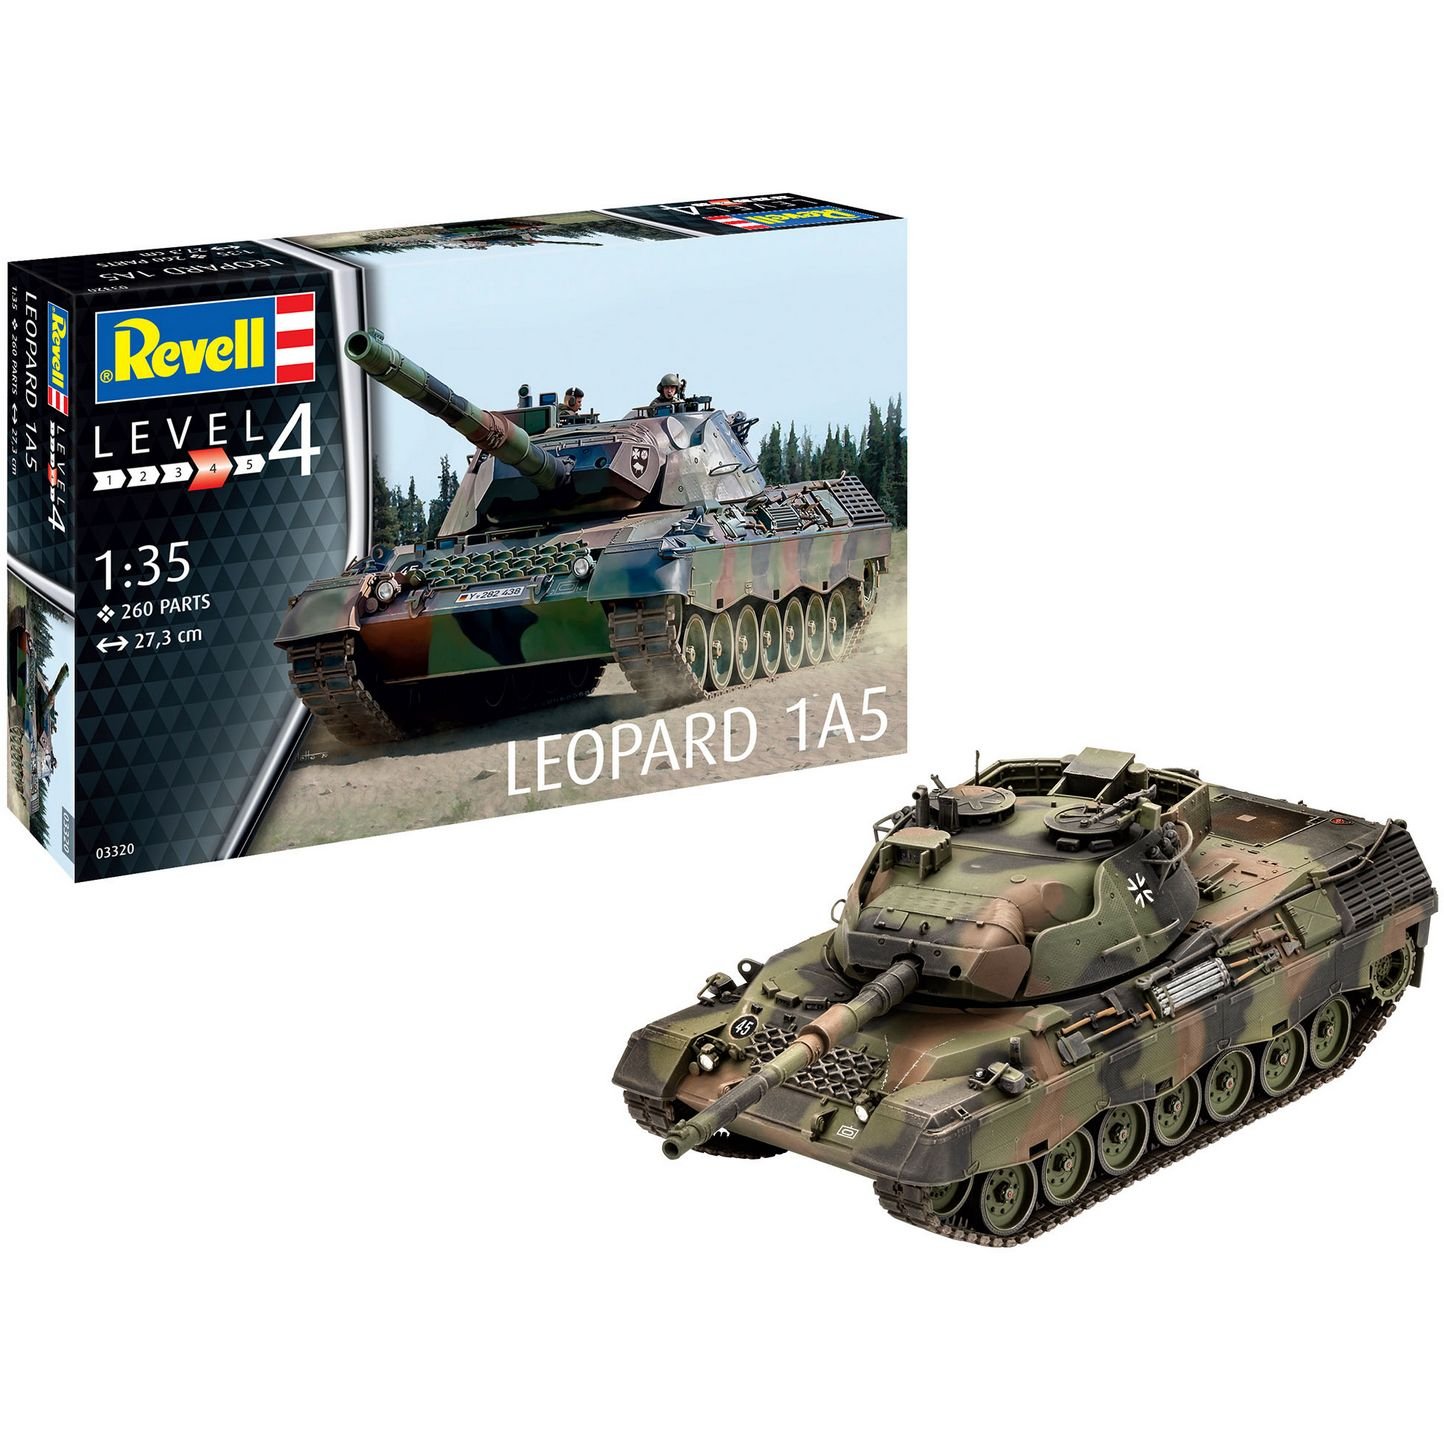 Сборная модель Revell Танк Leopard 1A5, уровень 4, масштаб 1:35, 260 деталей (RVL-03320) - фото 8